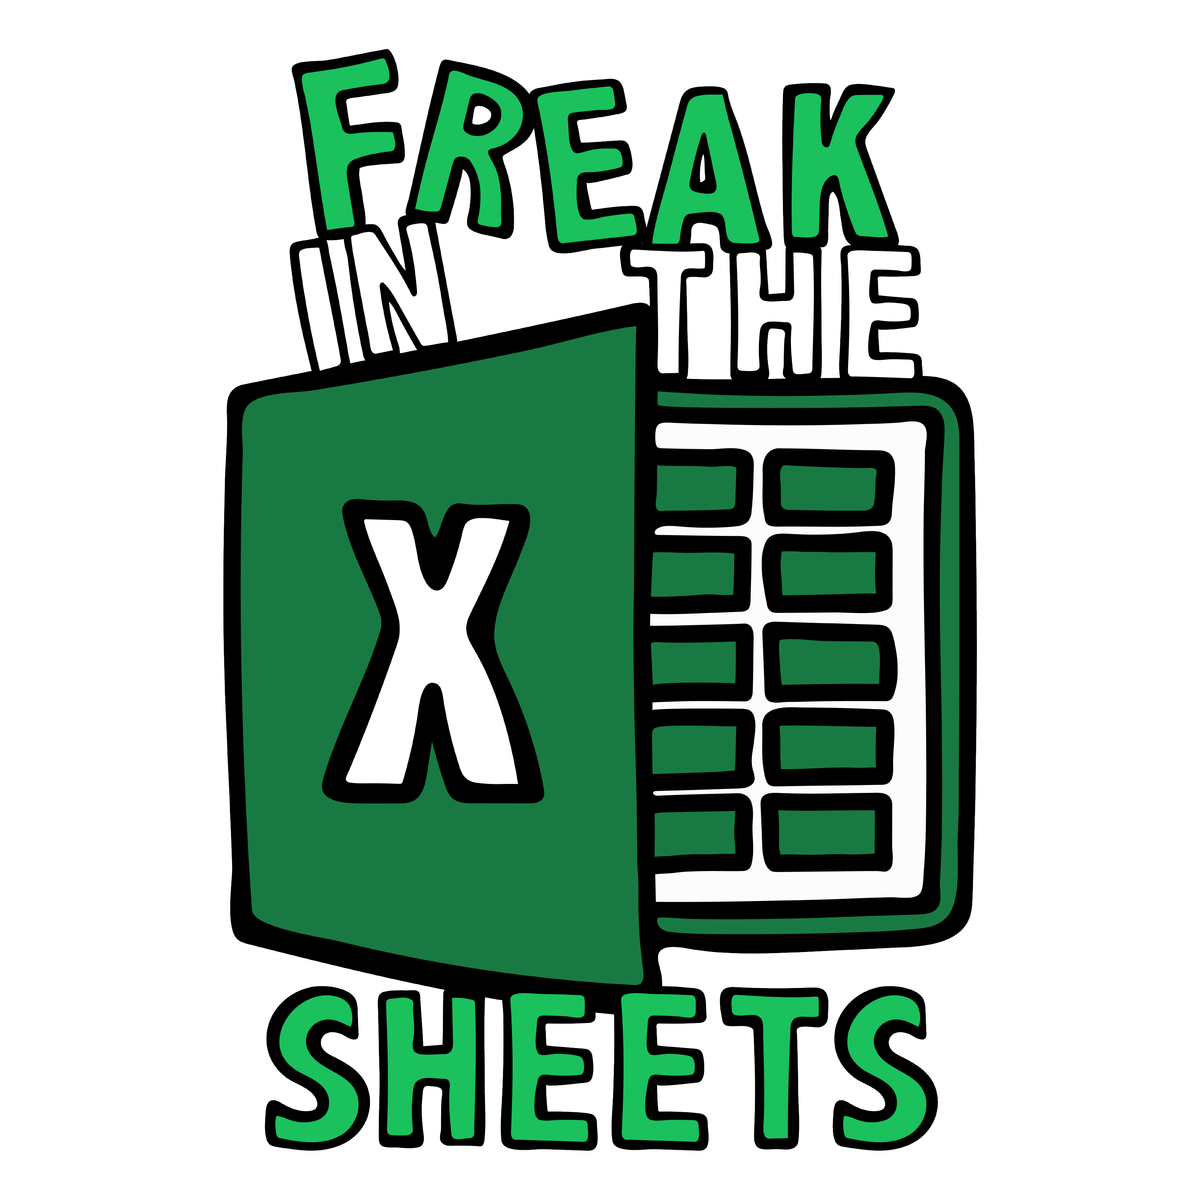 Freak in the Sheets 📈🛌- Unisex Hoodie